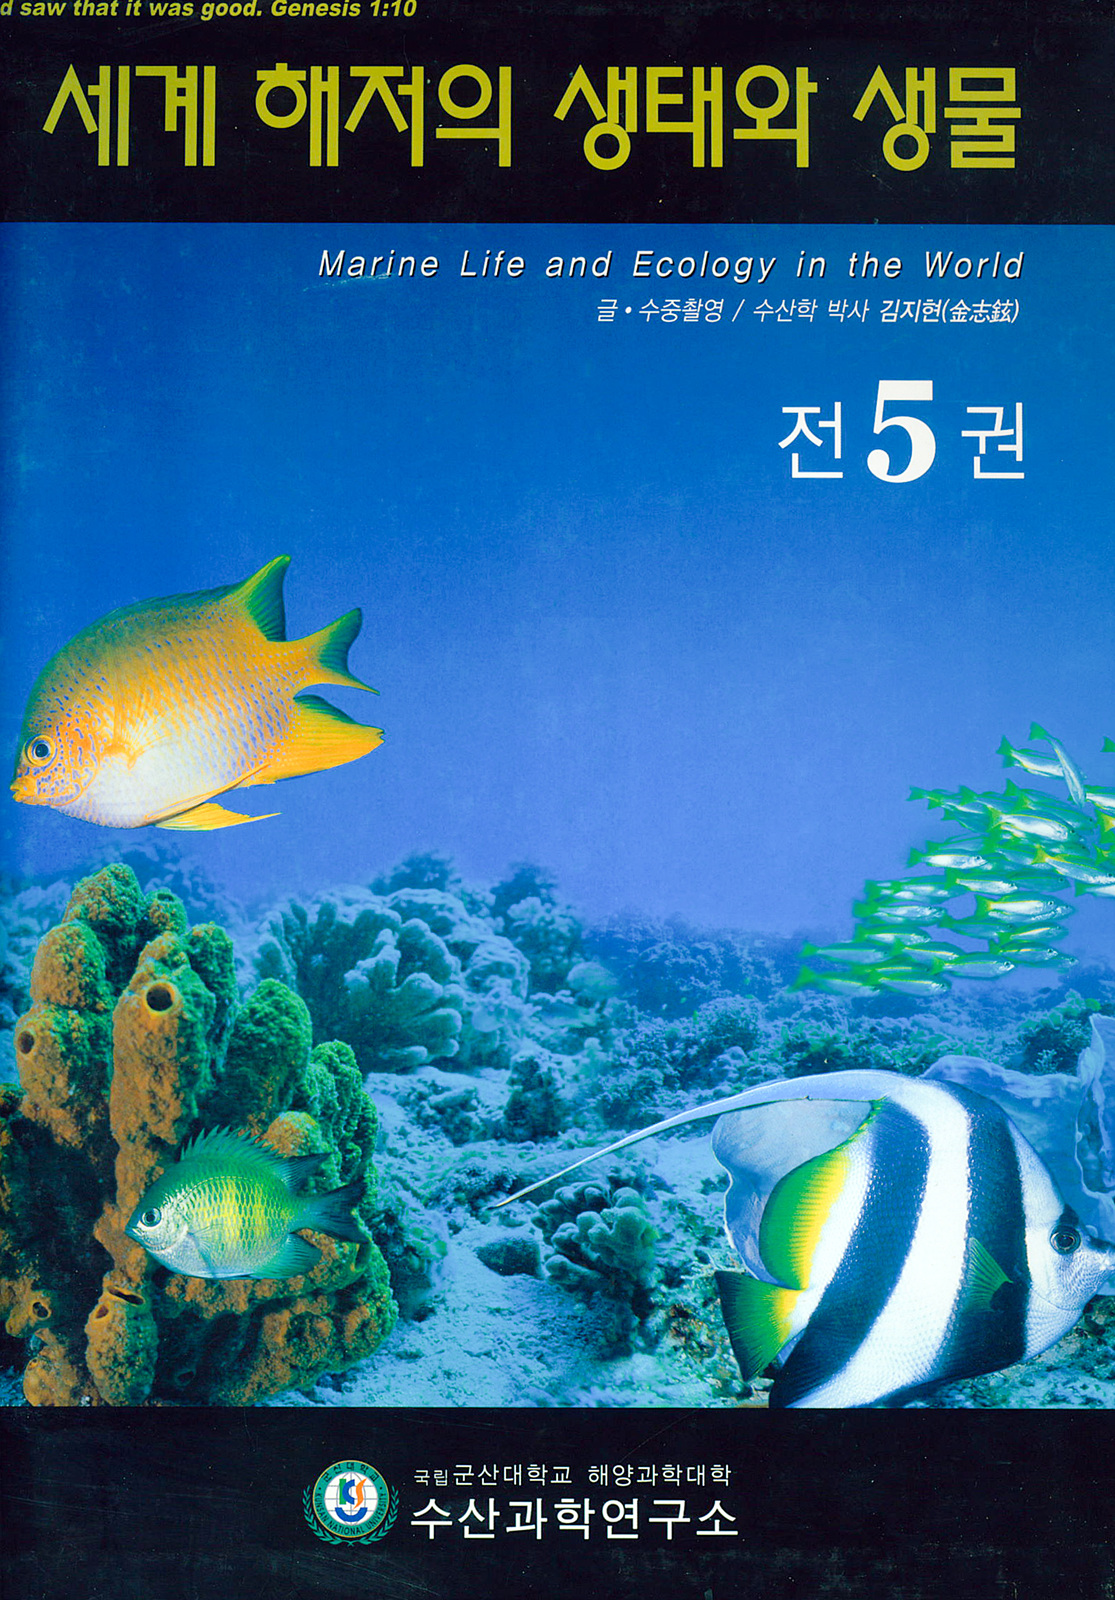 2004세계해저의 생태와 생물